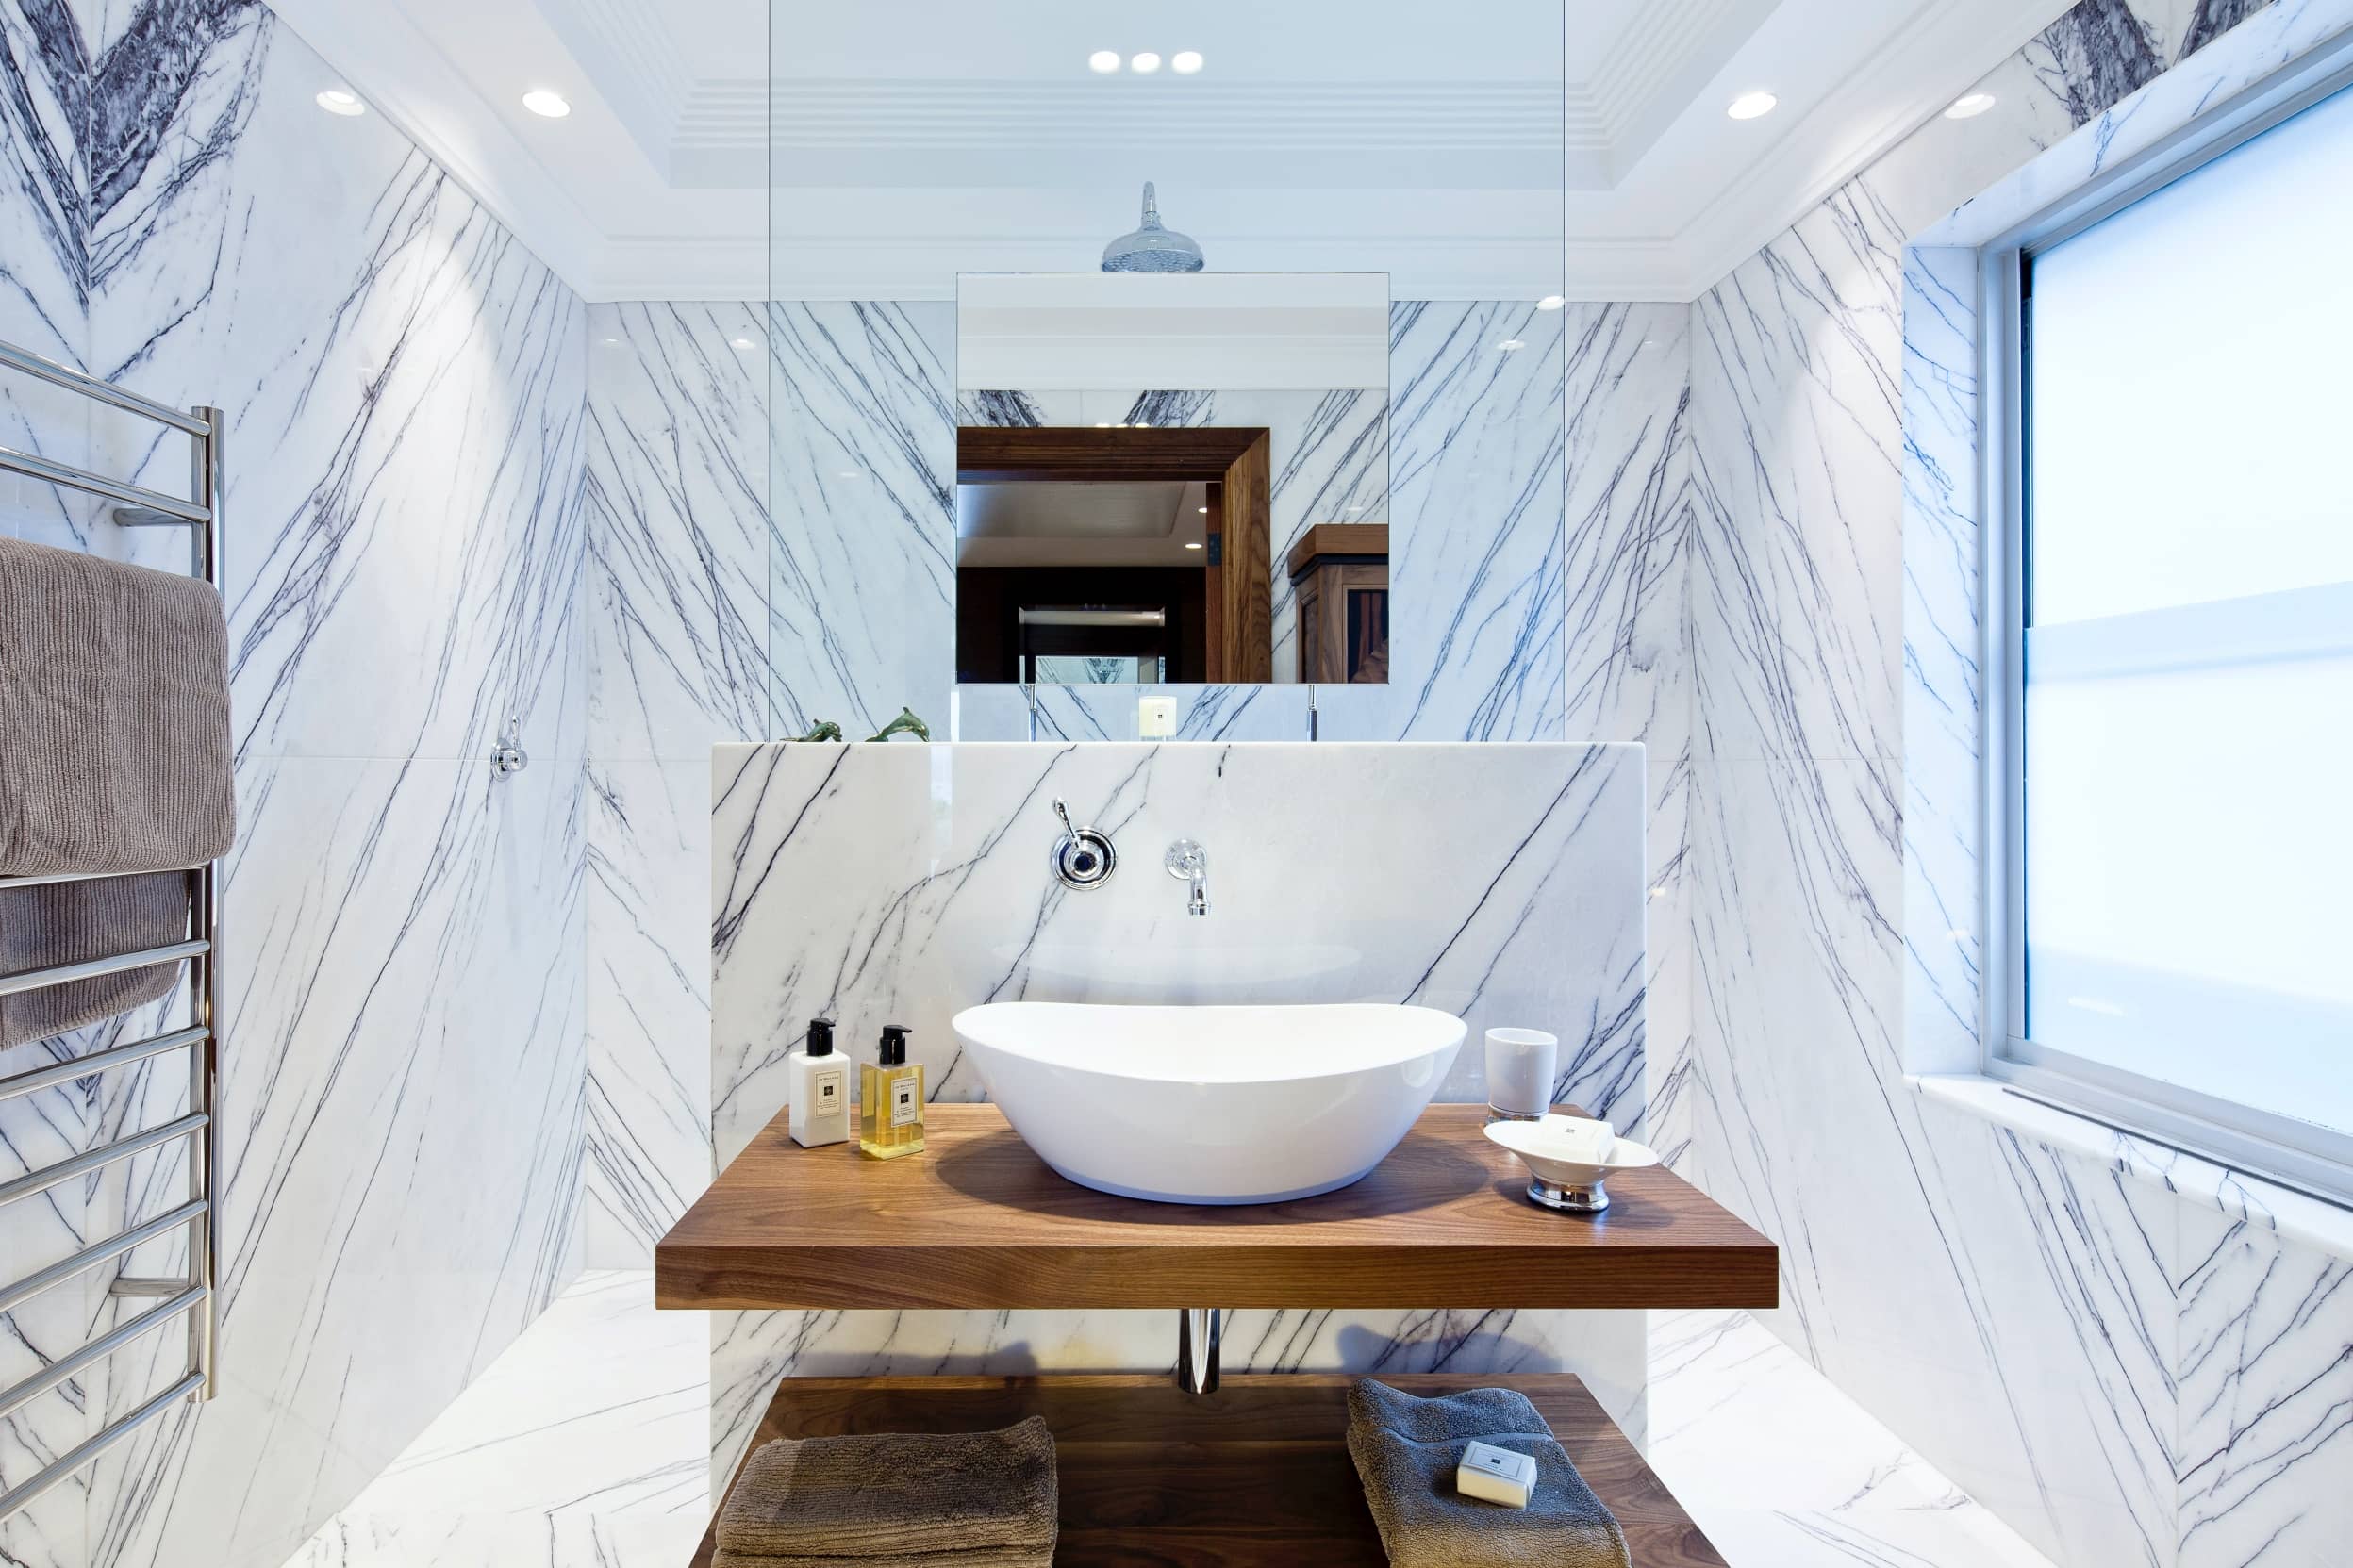 Cuarto de baño con azulejos de mármol, una de las tendencias actuales